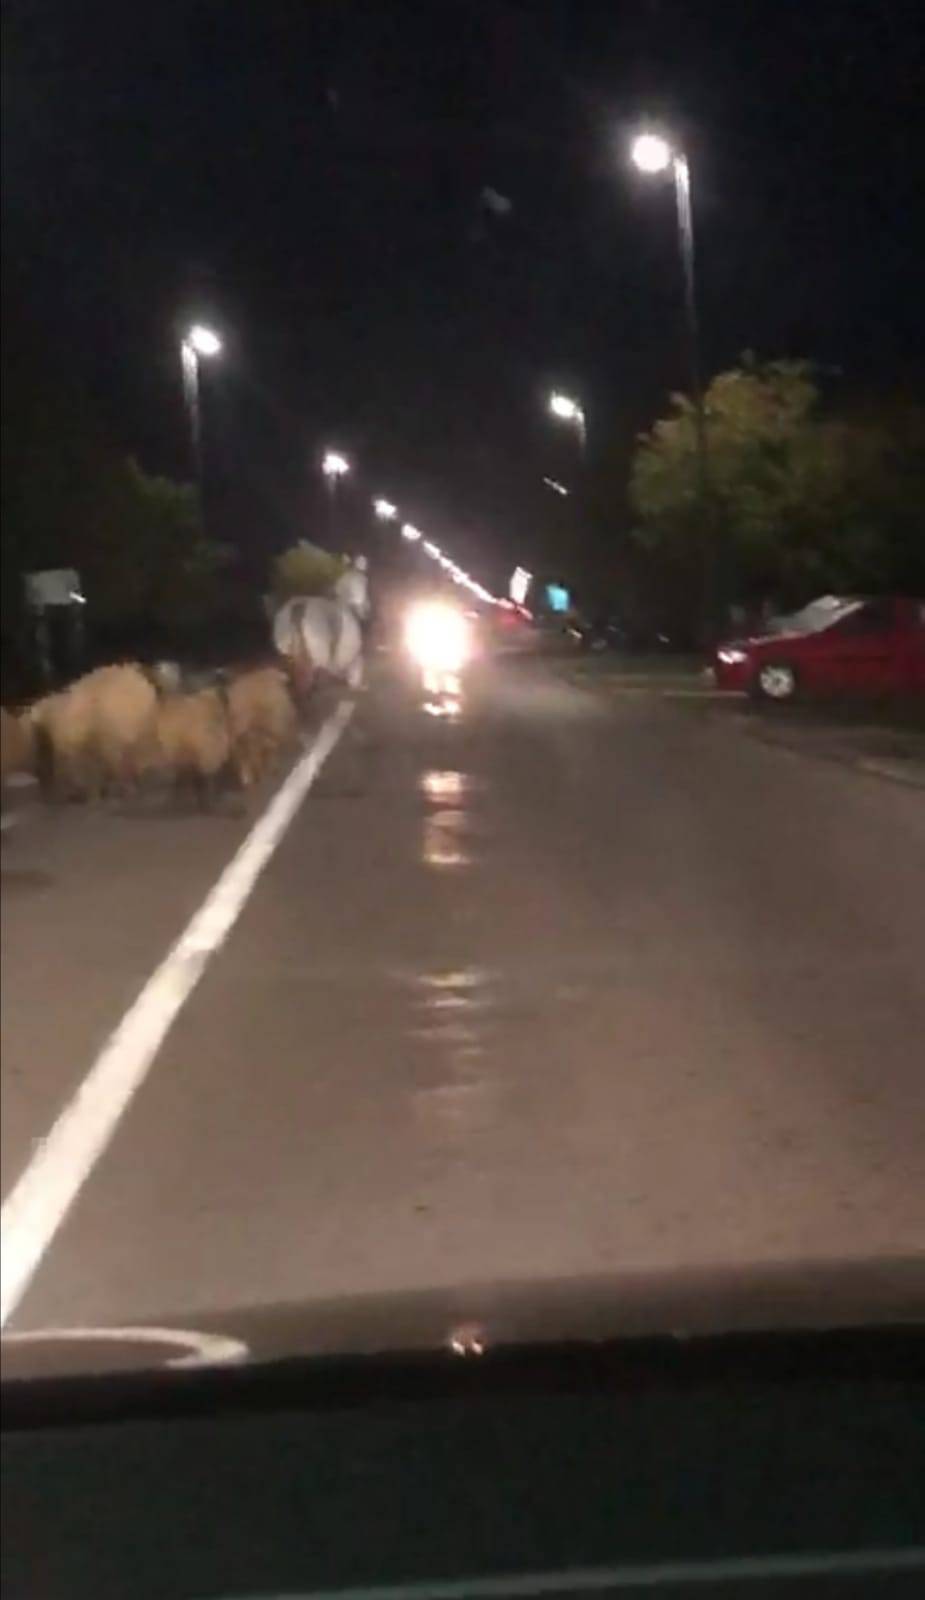 Konj glumio pastira u Županji: Izveo je stado ovaca na cestu i radio kaos, policija ih zaustavila